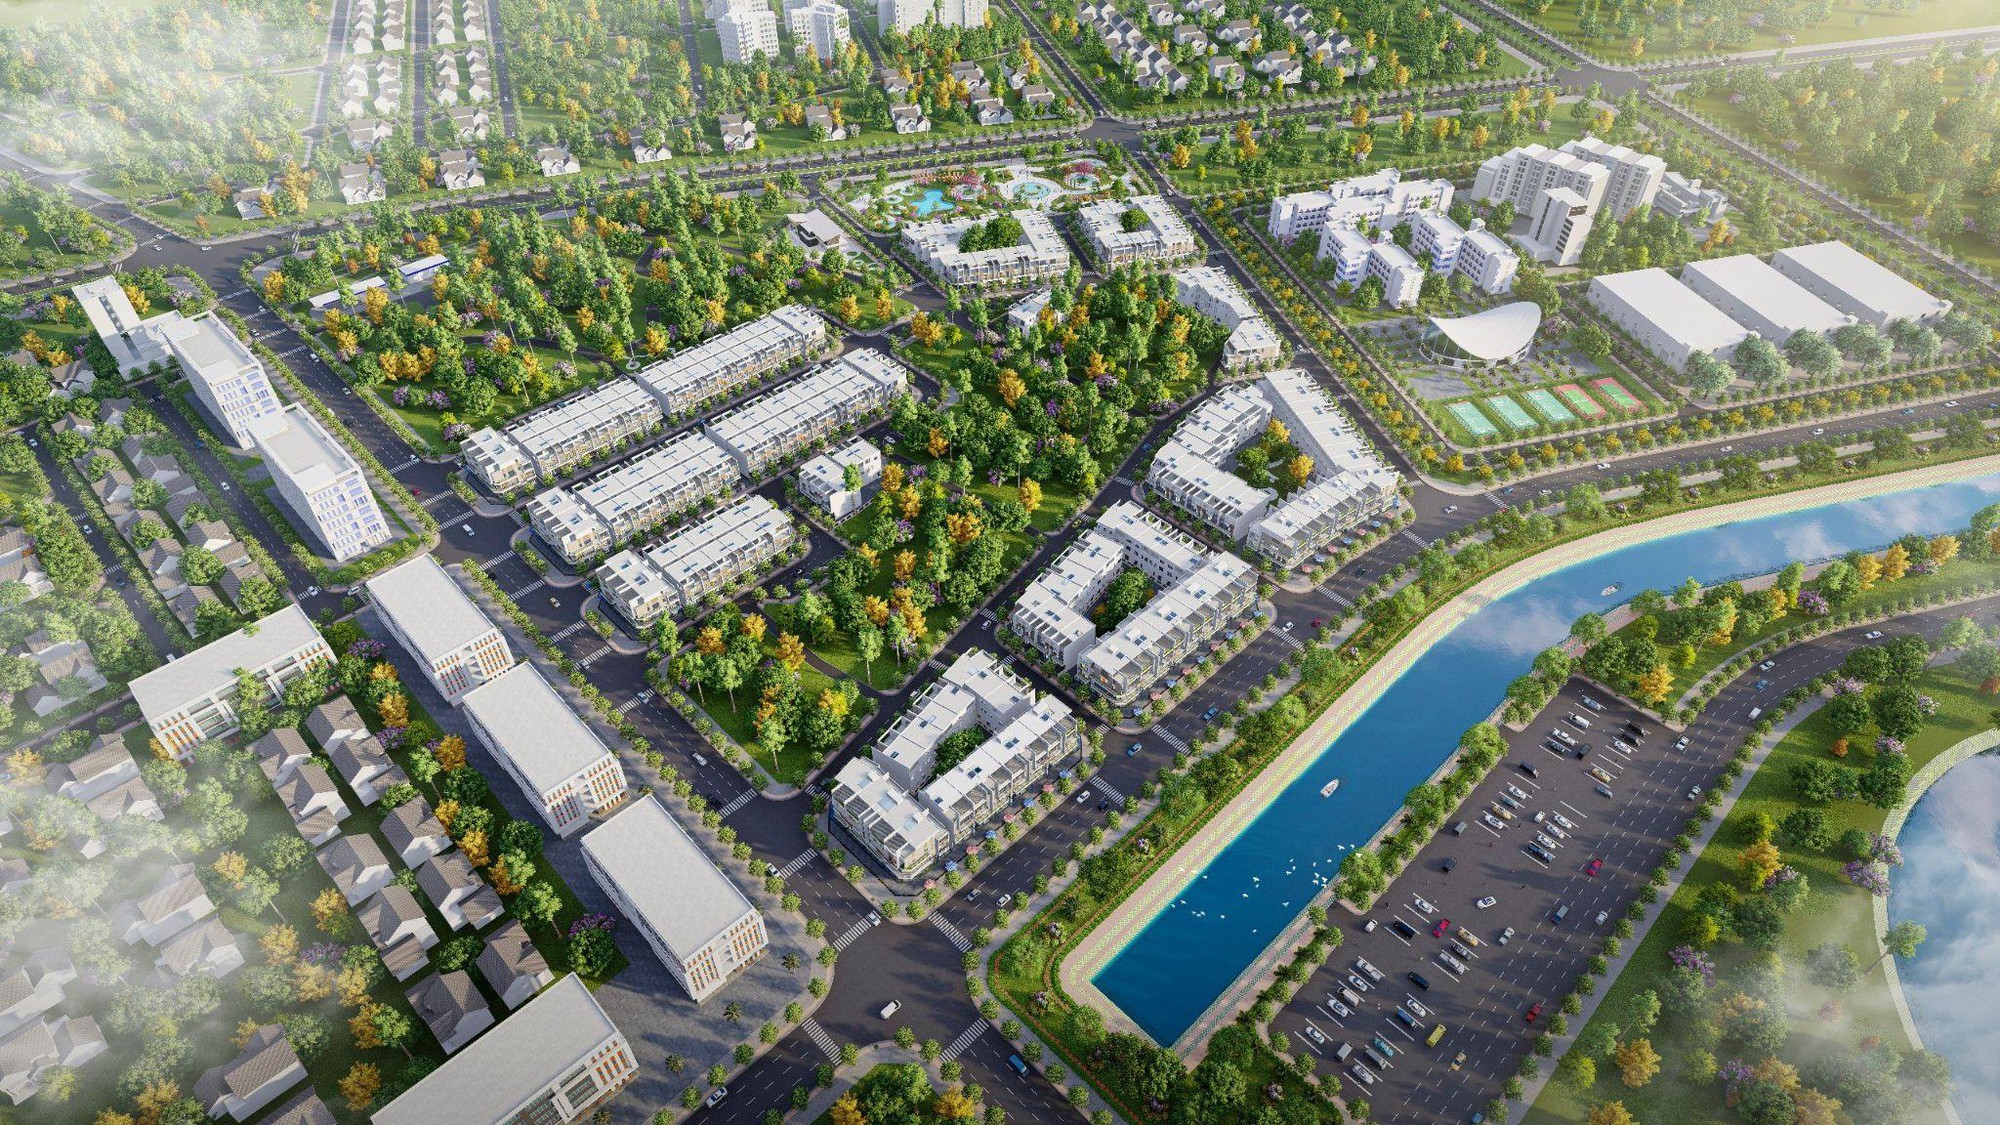 Chuyện an cư ở dự án có cao độ ấn tượng tại Thành phố Huế - Ảnh 2.